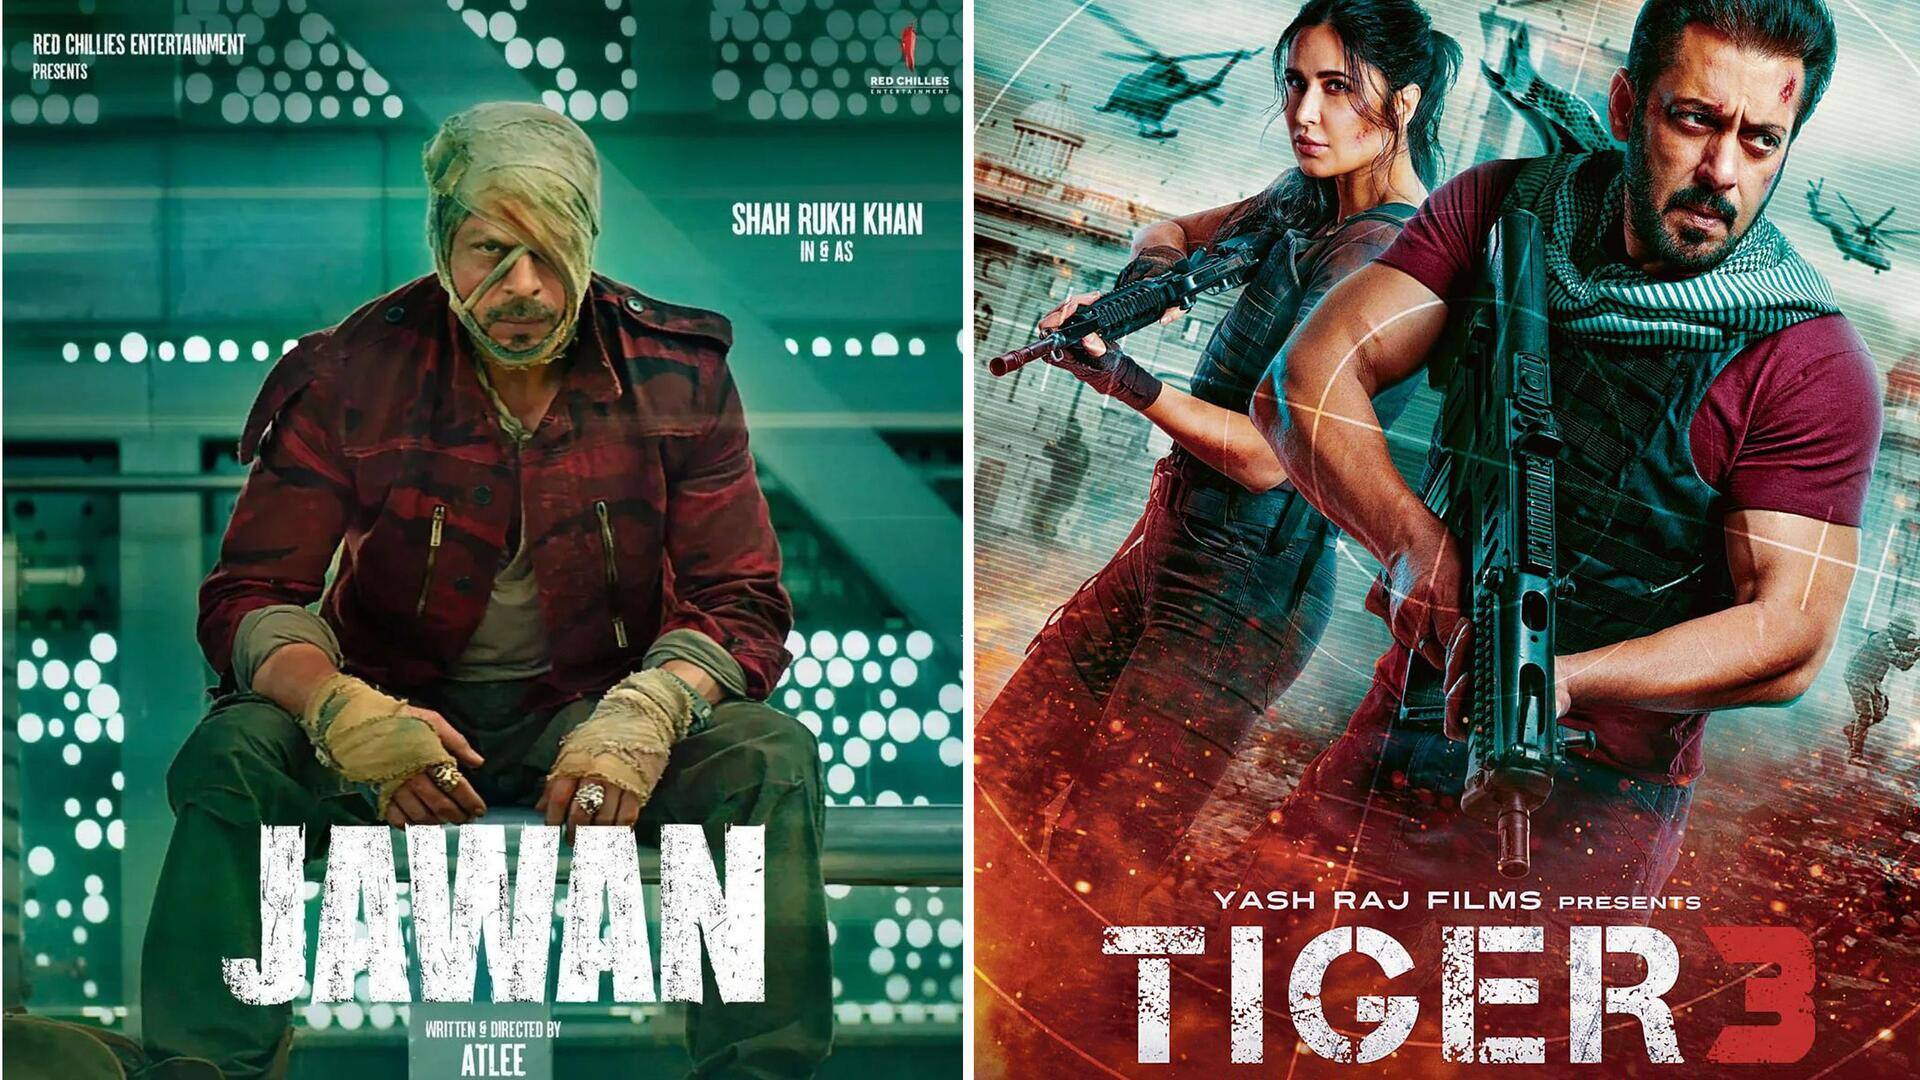 'टाइगर 3' हुई 100 करोड़ रुपये के पार, दूसरे दिन बनी सबसे ज्यादा कमाऊ हिंदी फिल्म